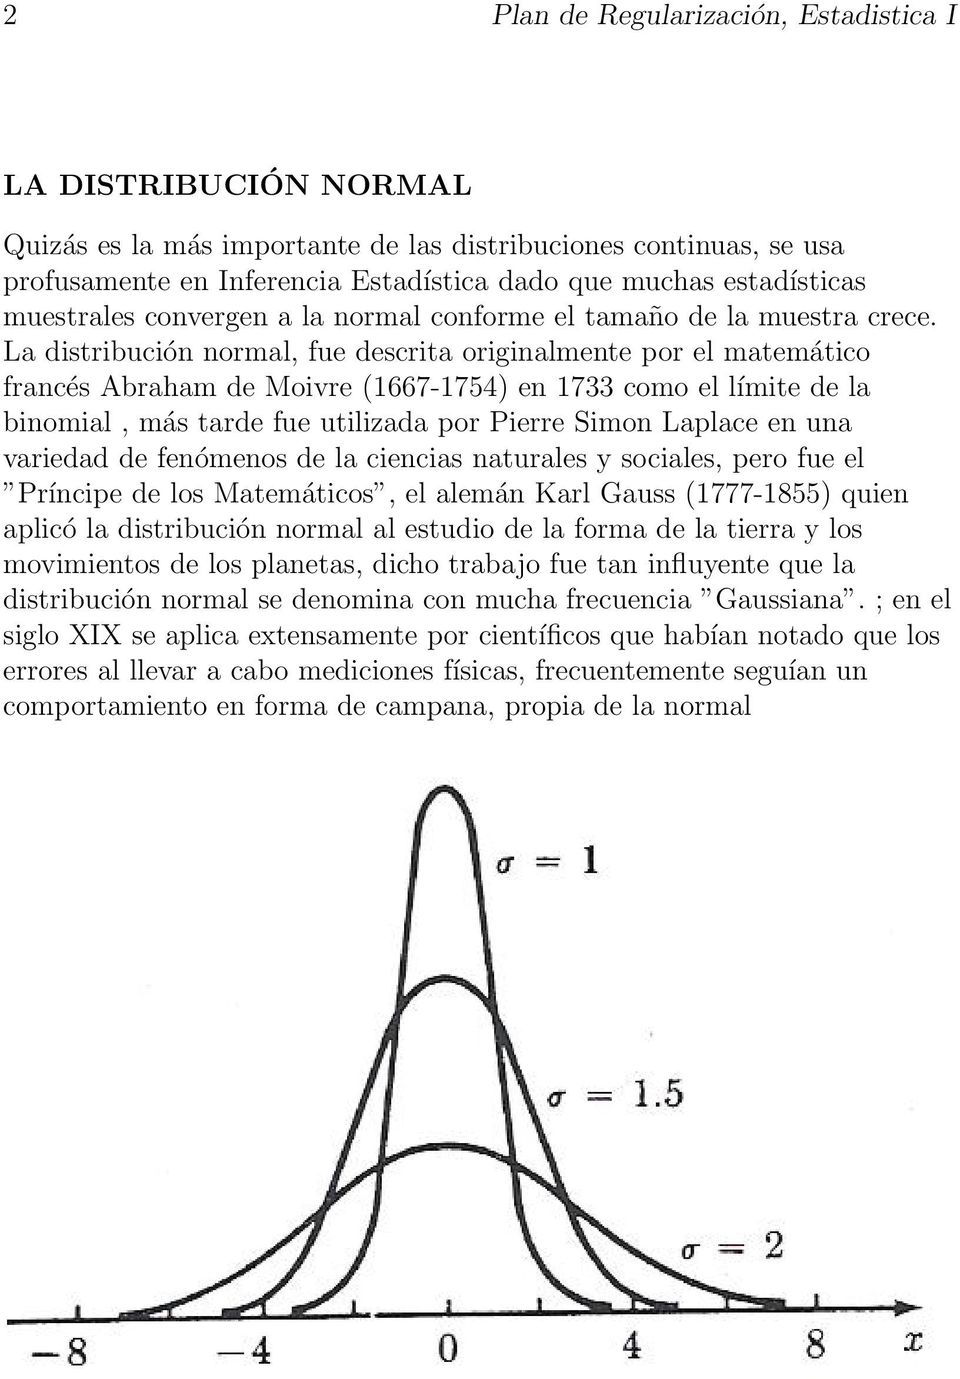 La distribución normal, fue descrita originalmente por el matemático francés Abraham de Moivre (1667-1754) en 1733 como el límite de la binomial, más tarde fue utilizada por Pierre Simon Laplace en